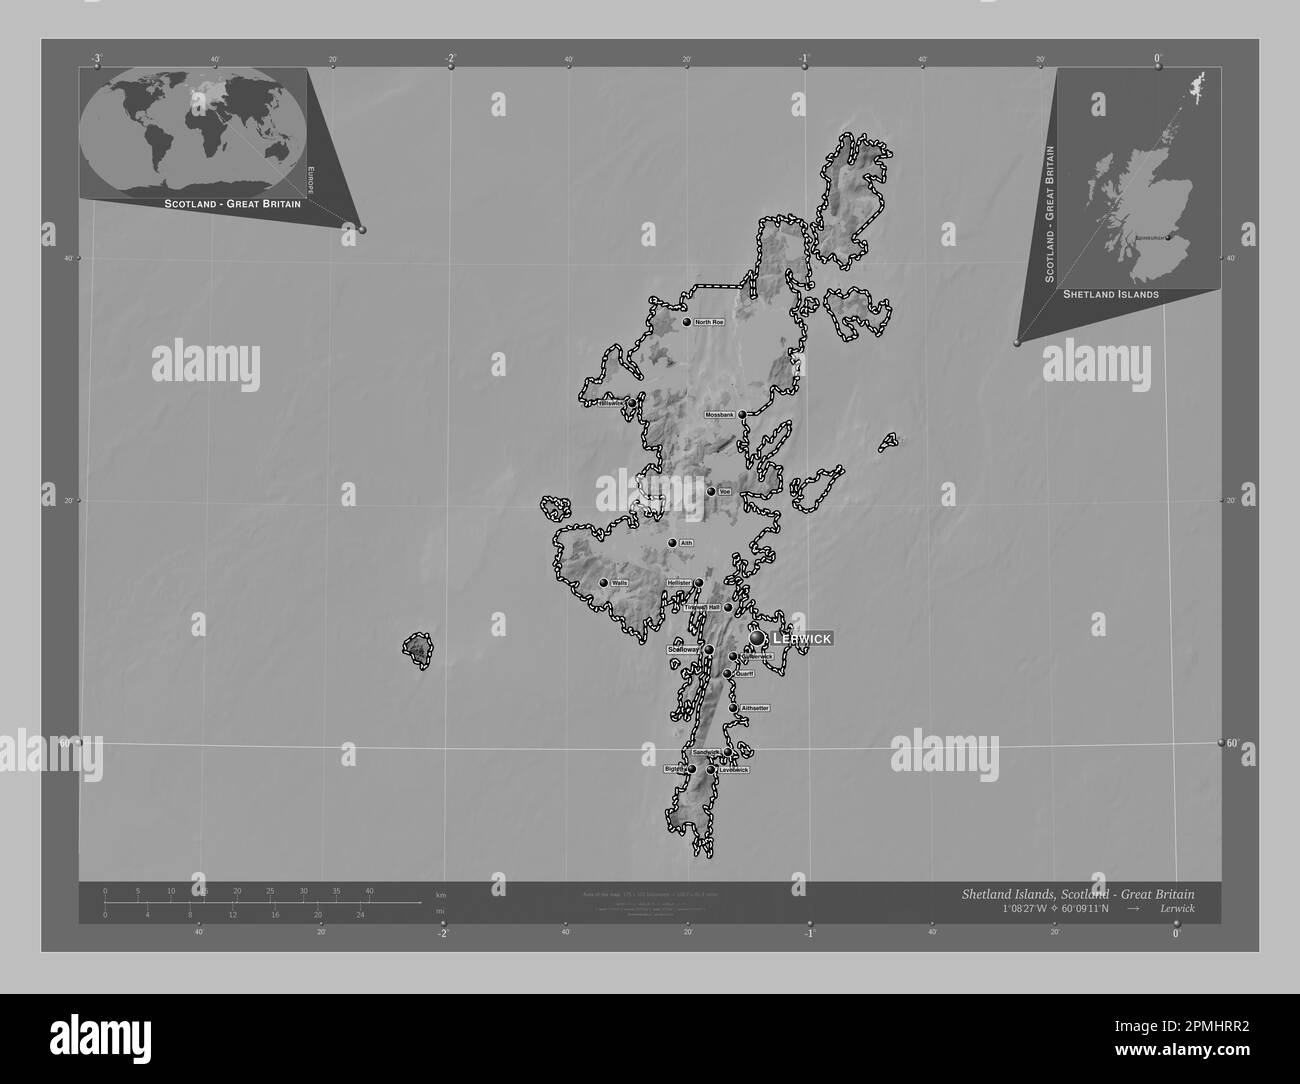 Shetland Islands, Region Schottland – Großbritannien. Grauskala-Höhenkarte mit Seen und Flüssen. Standorte und Namen der wichtigsten Städte der Region Stockfoto